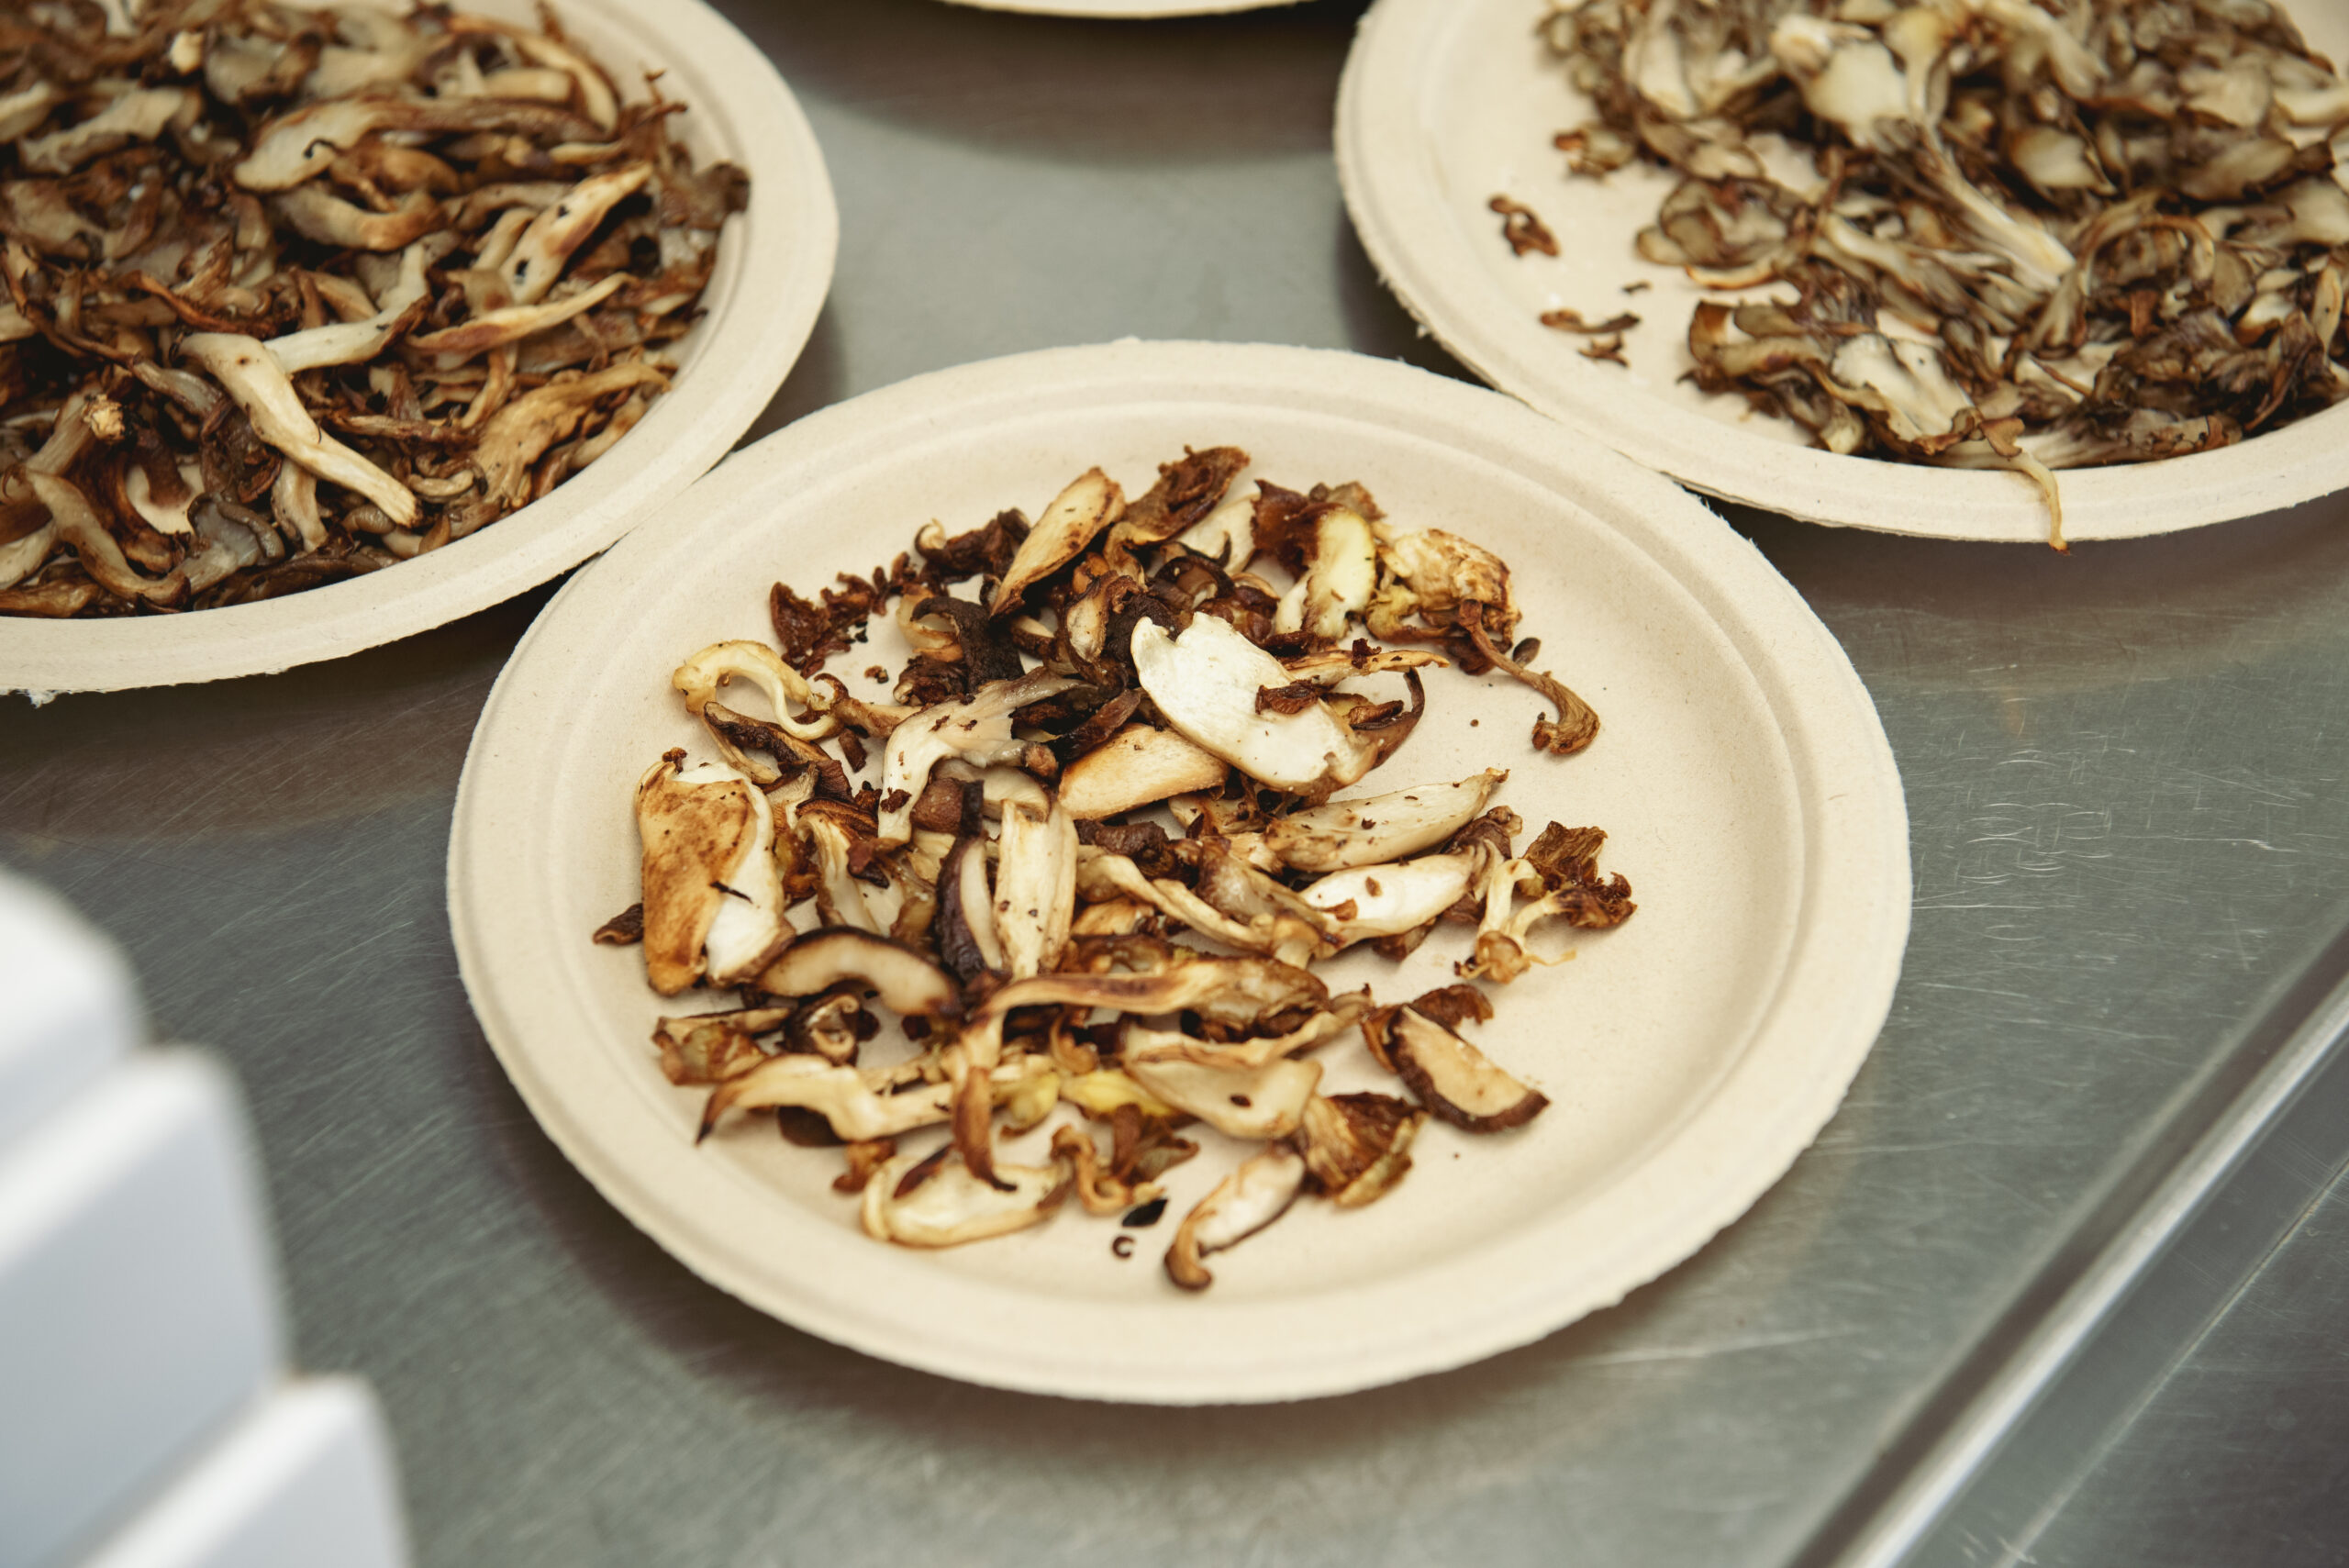 Plates of mushroom specimens.